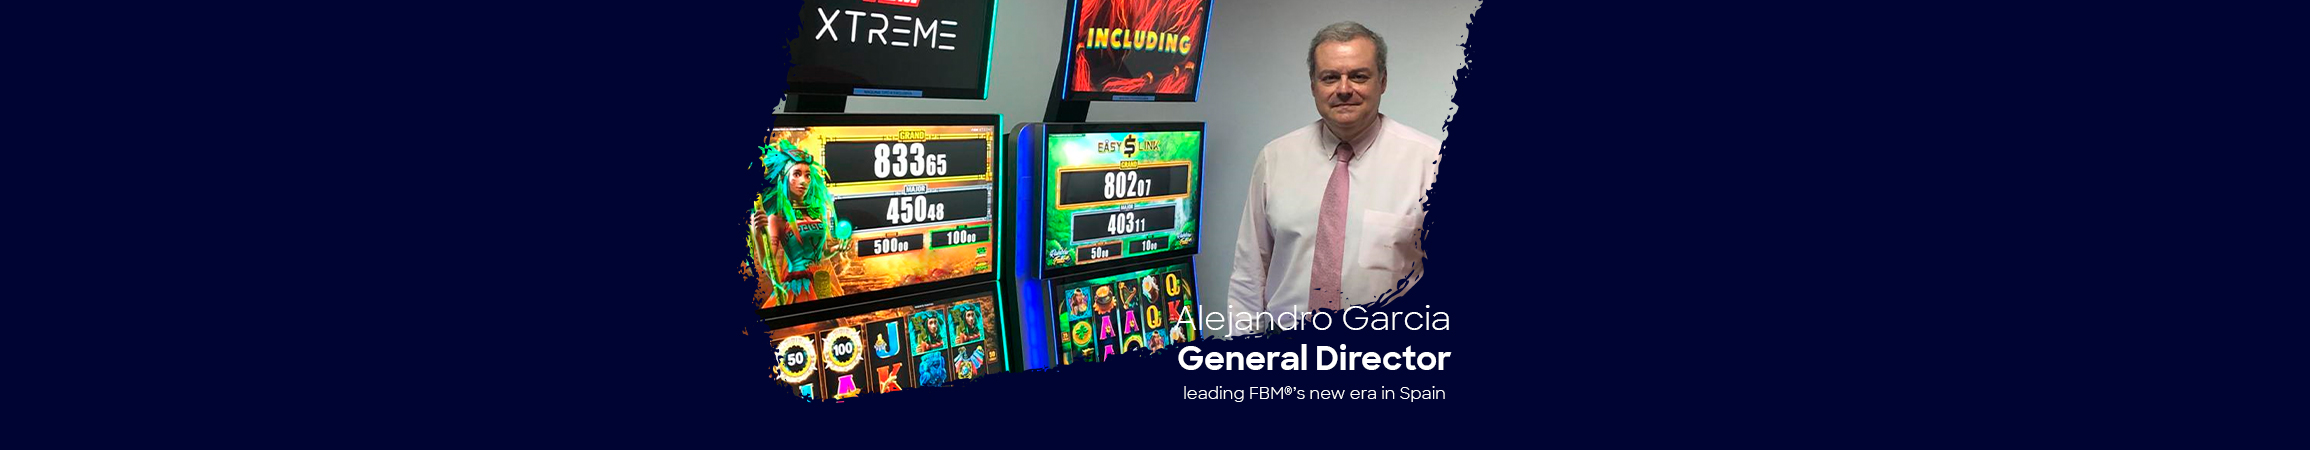 Alejandro Pérez Garcia is the General Director leading FBM®’s new era in Spain